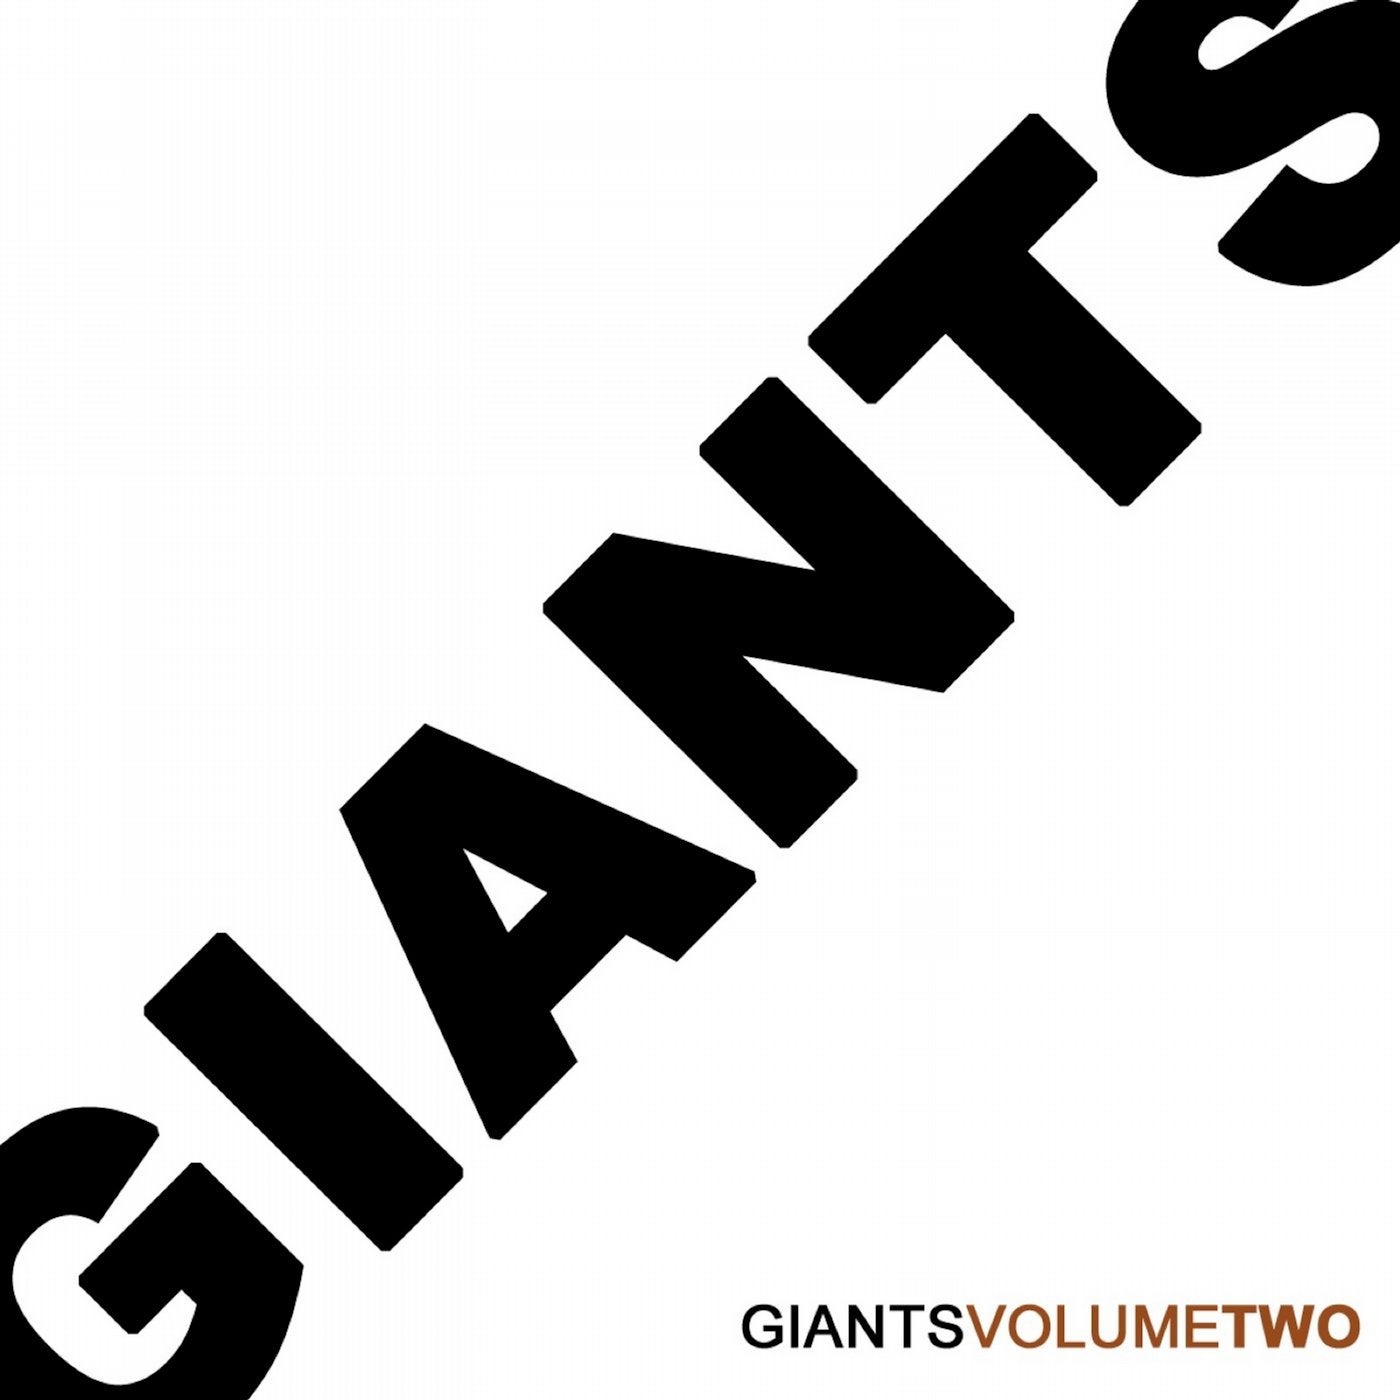 Giants, Vol. 2